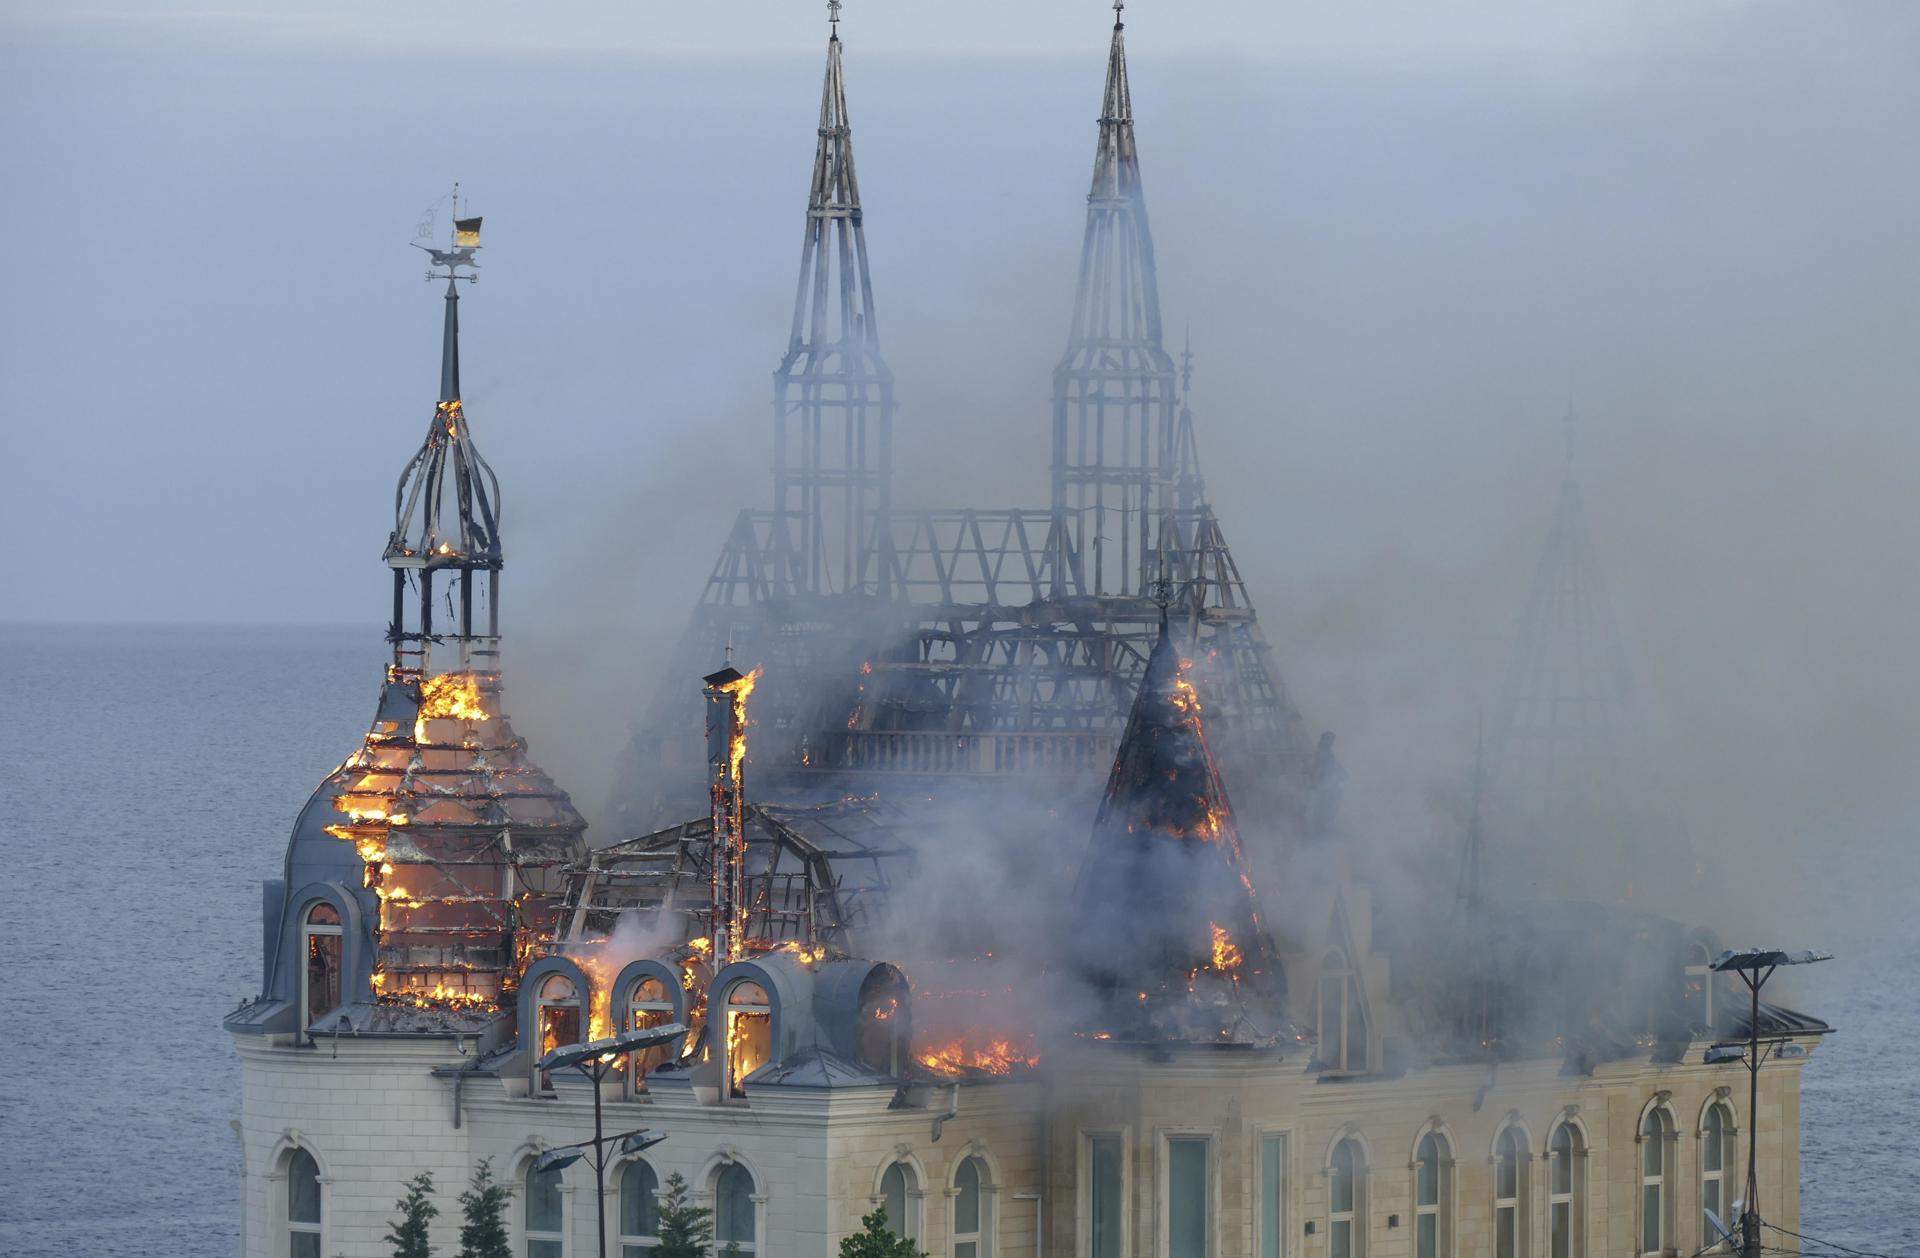 Un atac rus destrueix el 'castell de Harry Potter' d'Odessa i deixa almenys cinc morts